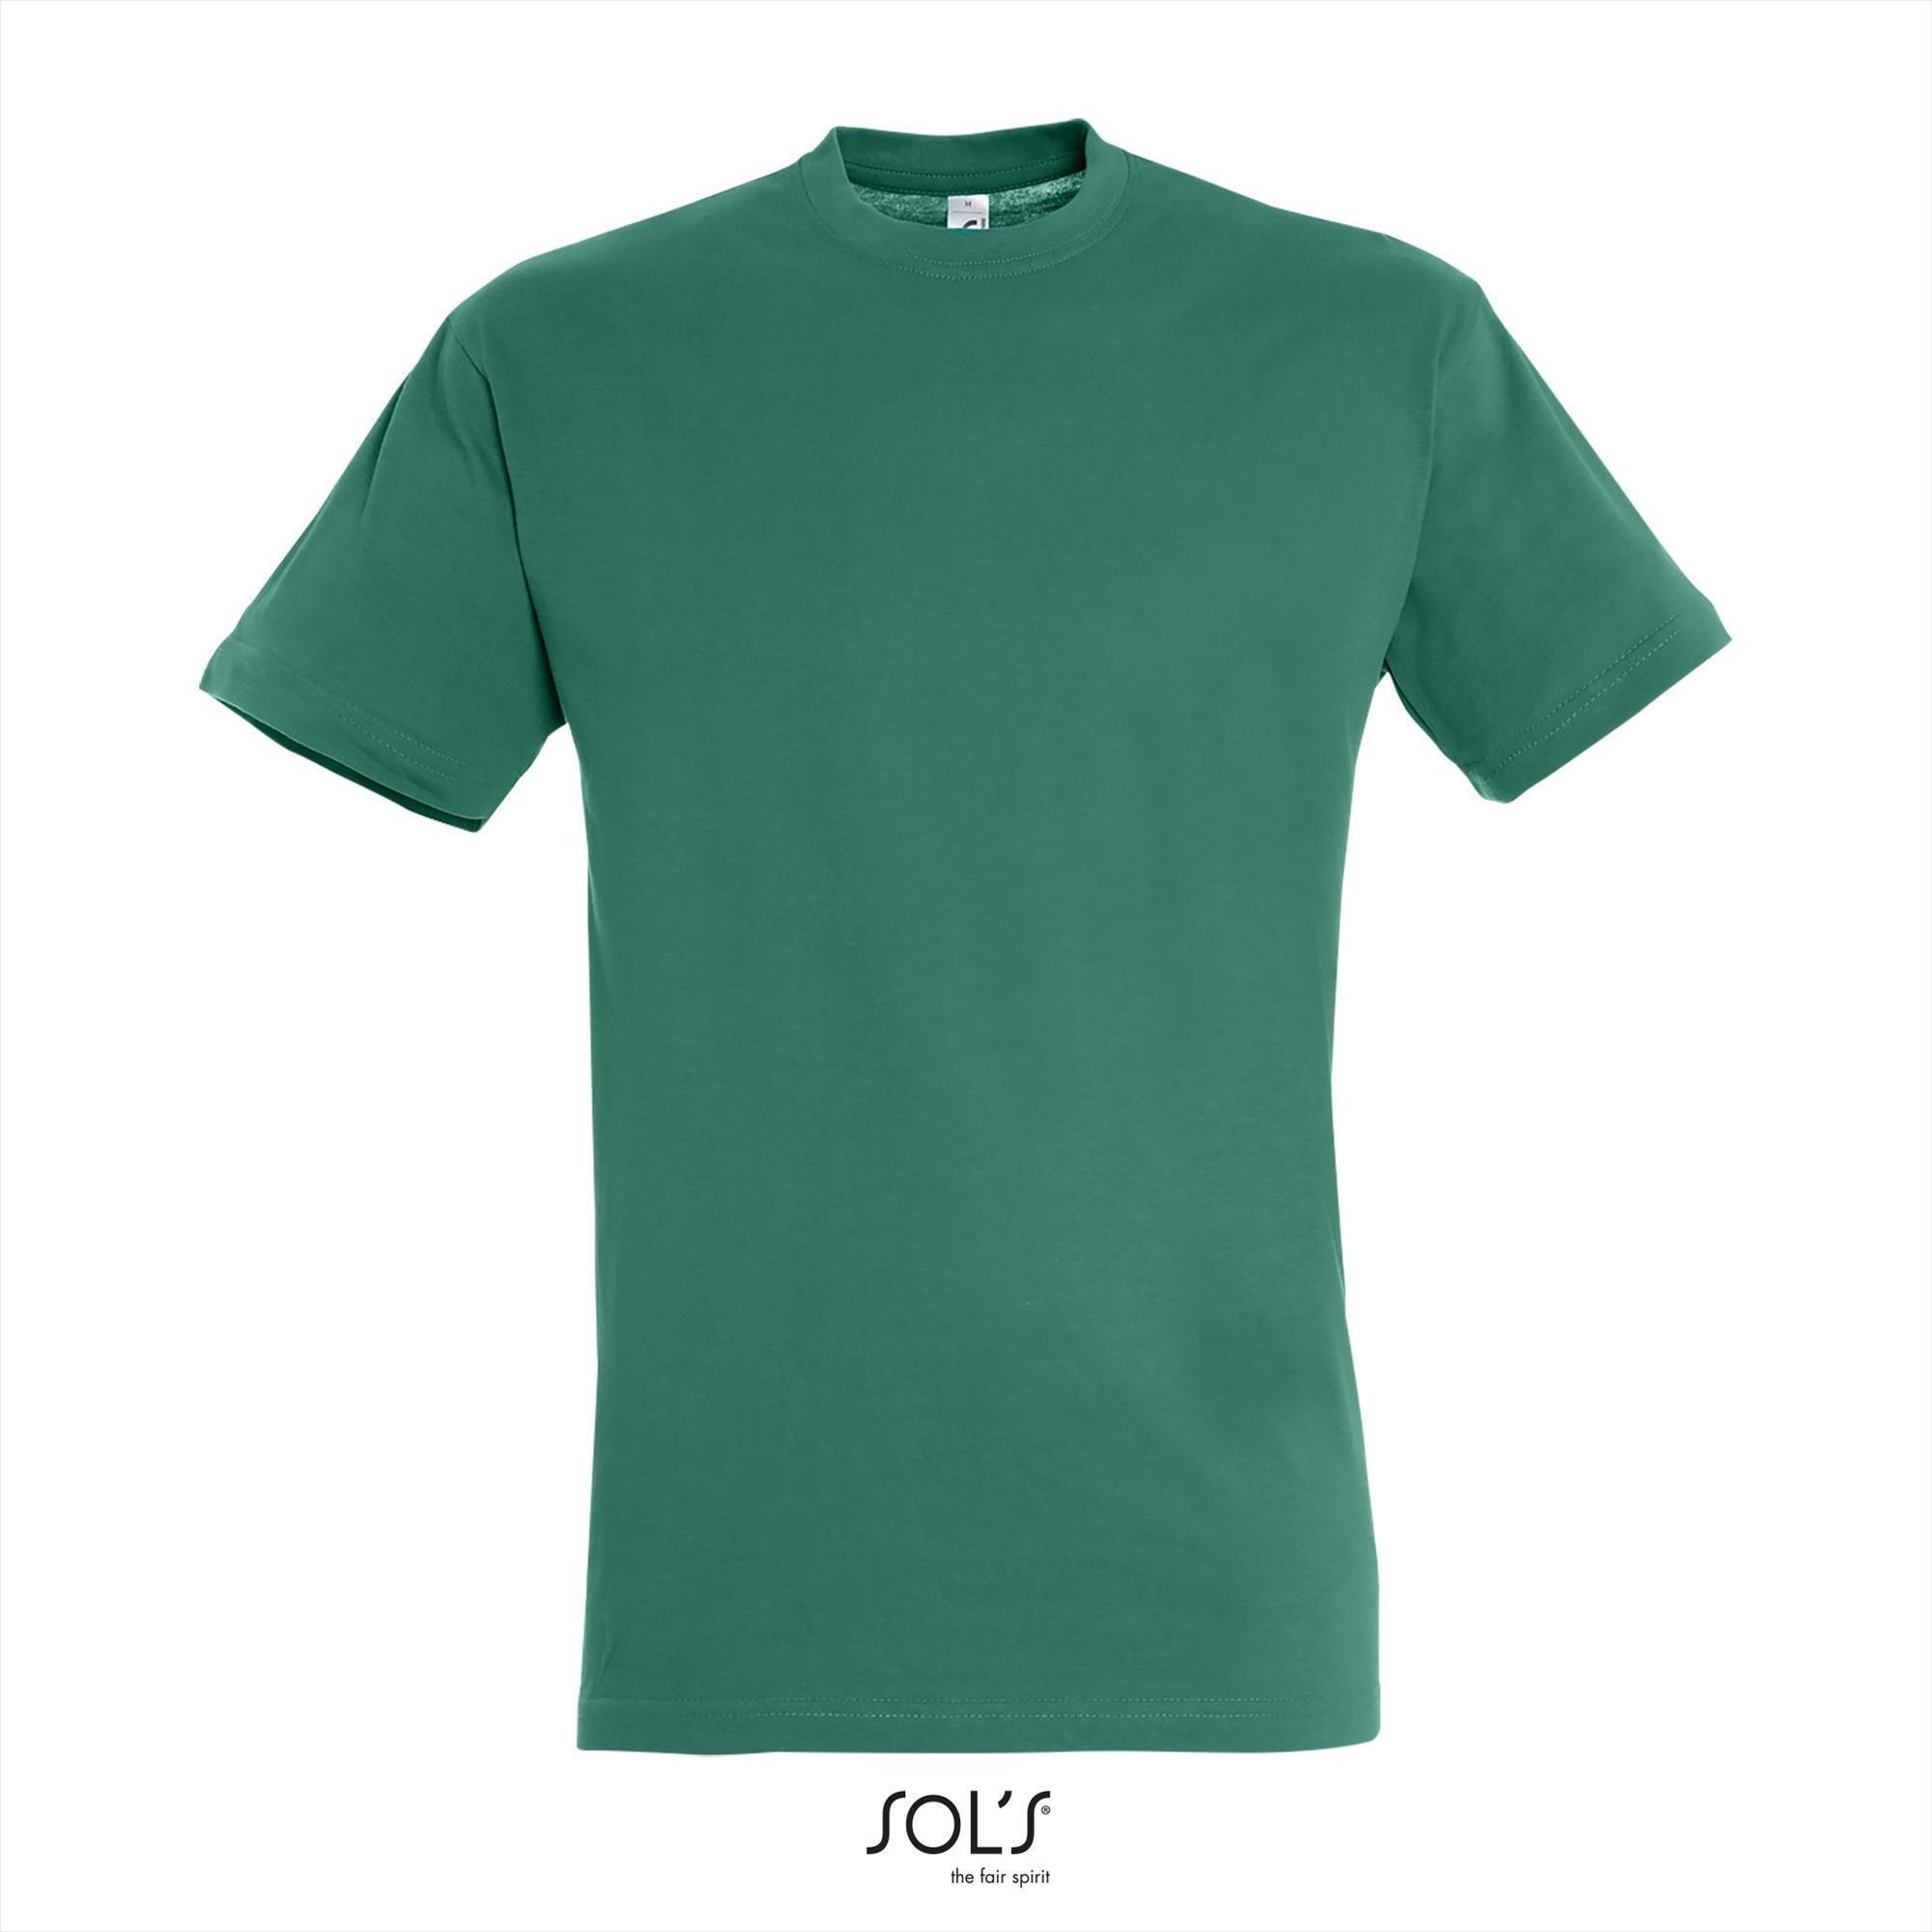 Heren T-shirt met een ronde hals mannen shirt emerald green groen